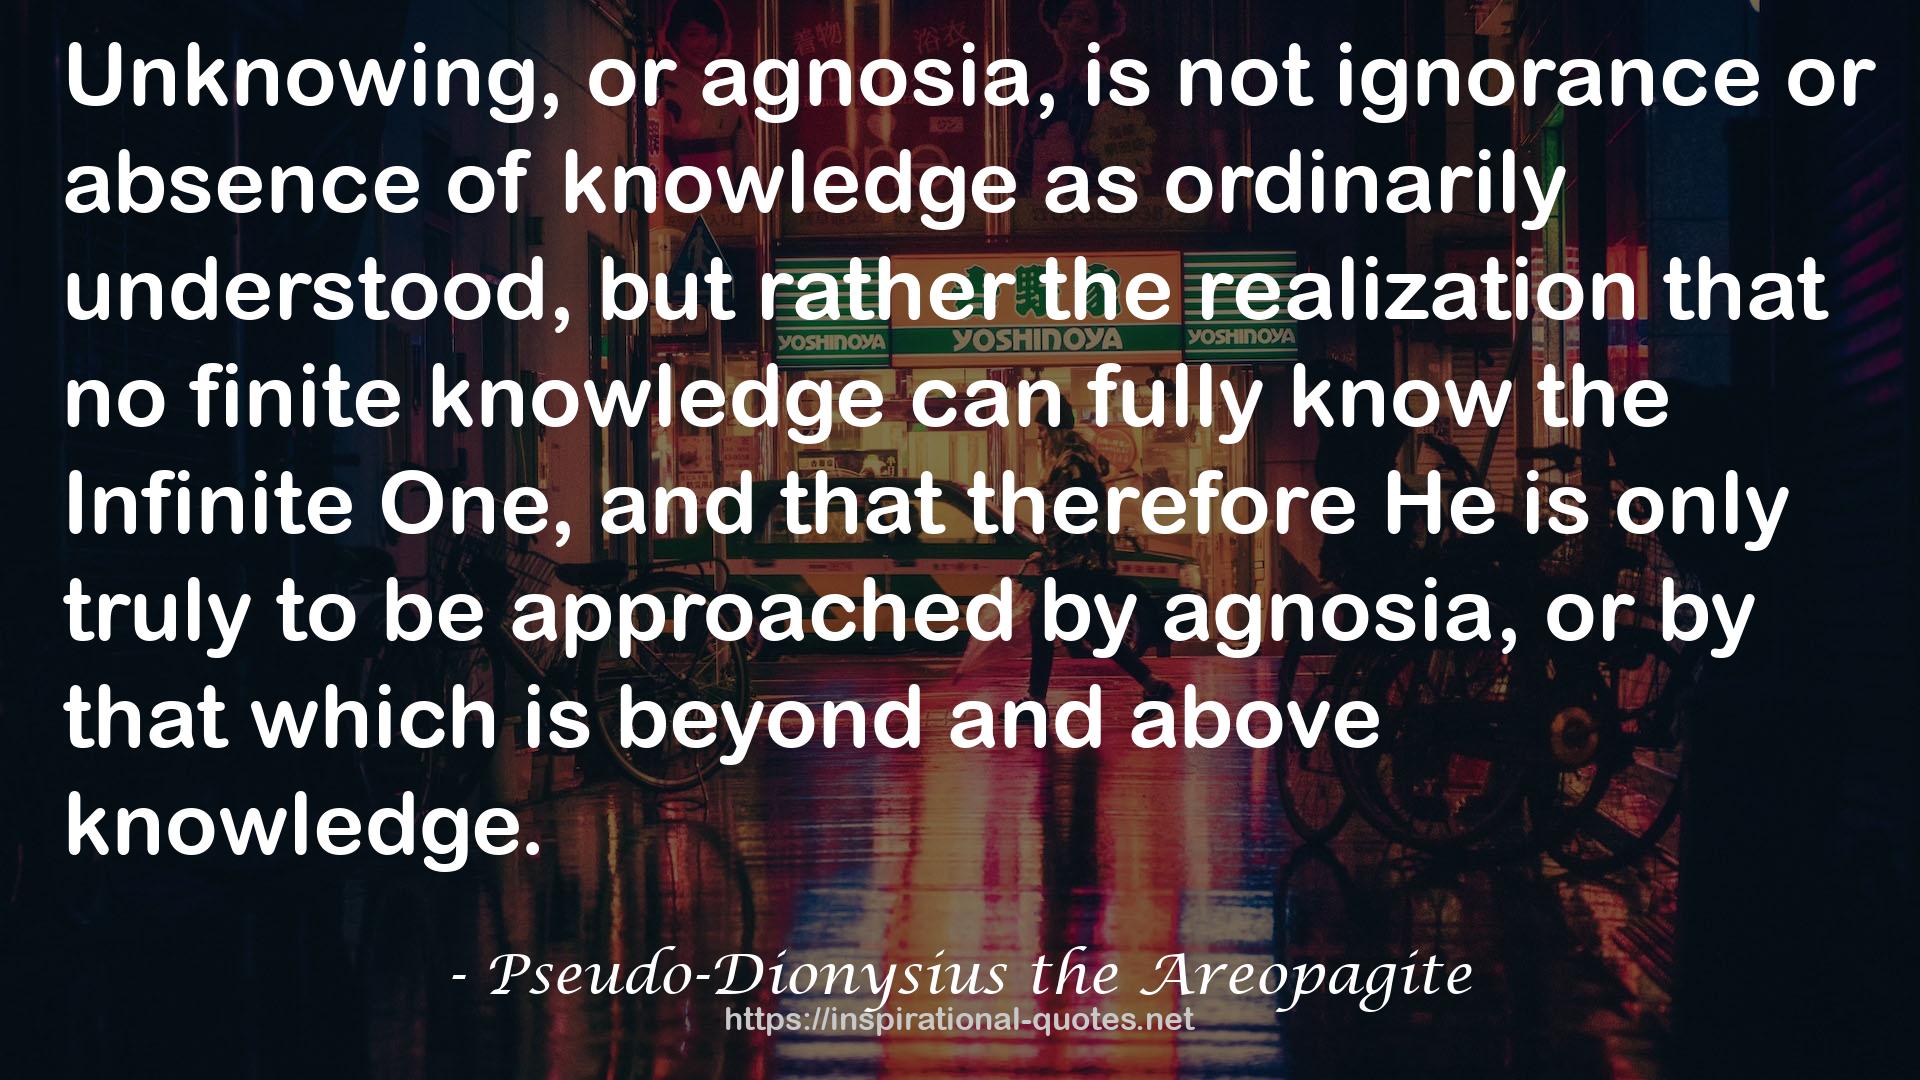 Pseudo-Dionysius the Areopagite QUOTES